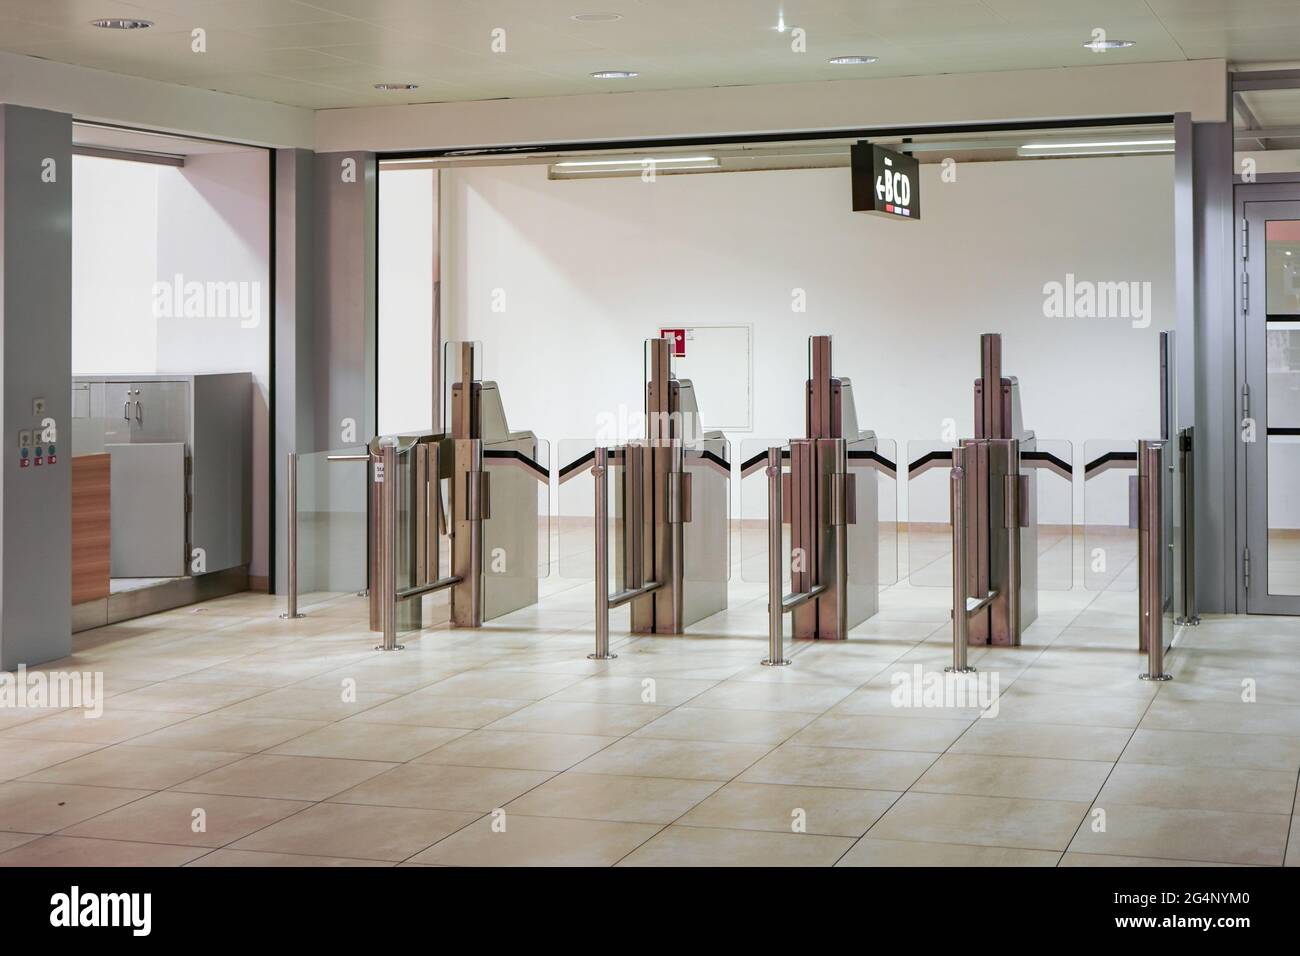 Puertas automáticas de seguridad en el vestíbulo del aeropuerto, no hay pasajeros cerca Foto de stock